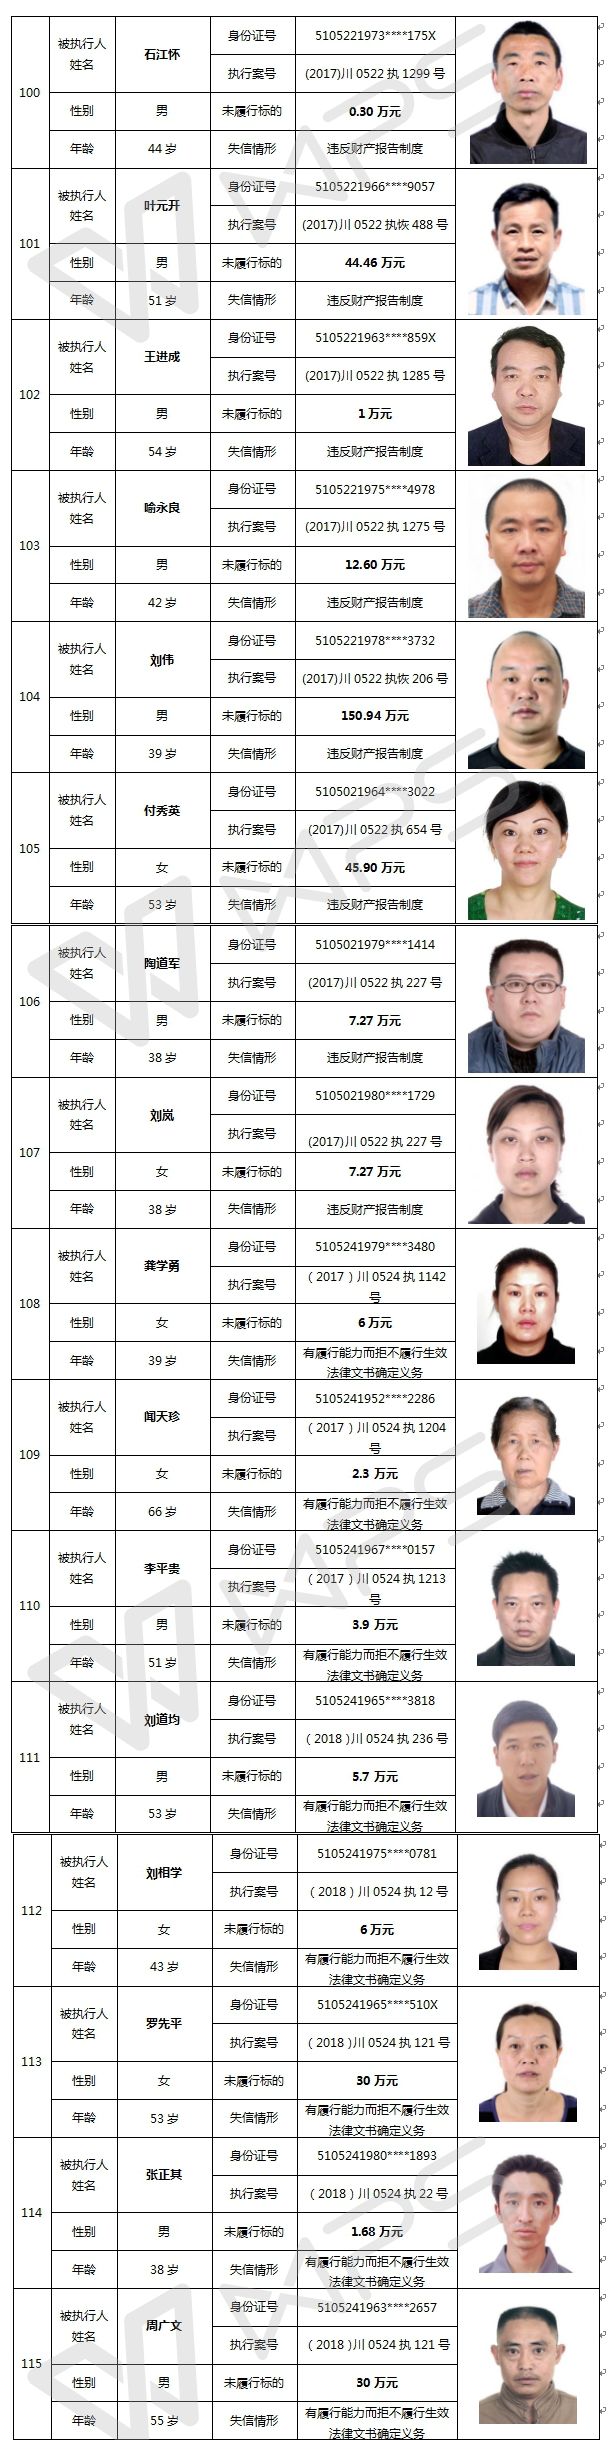 名单信息,四川亚泰建设有限公司法定代表人谢志平等 146名"老赖"榜上